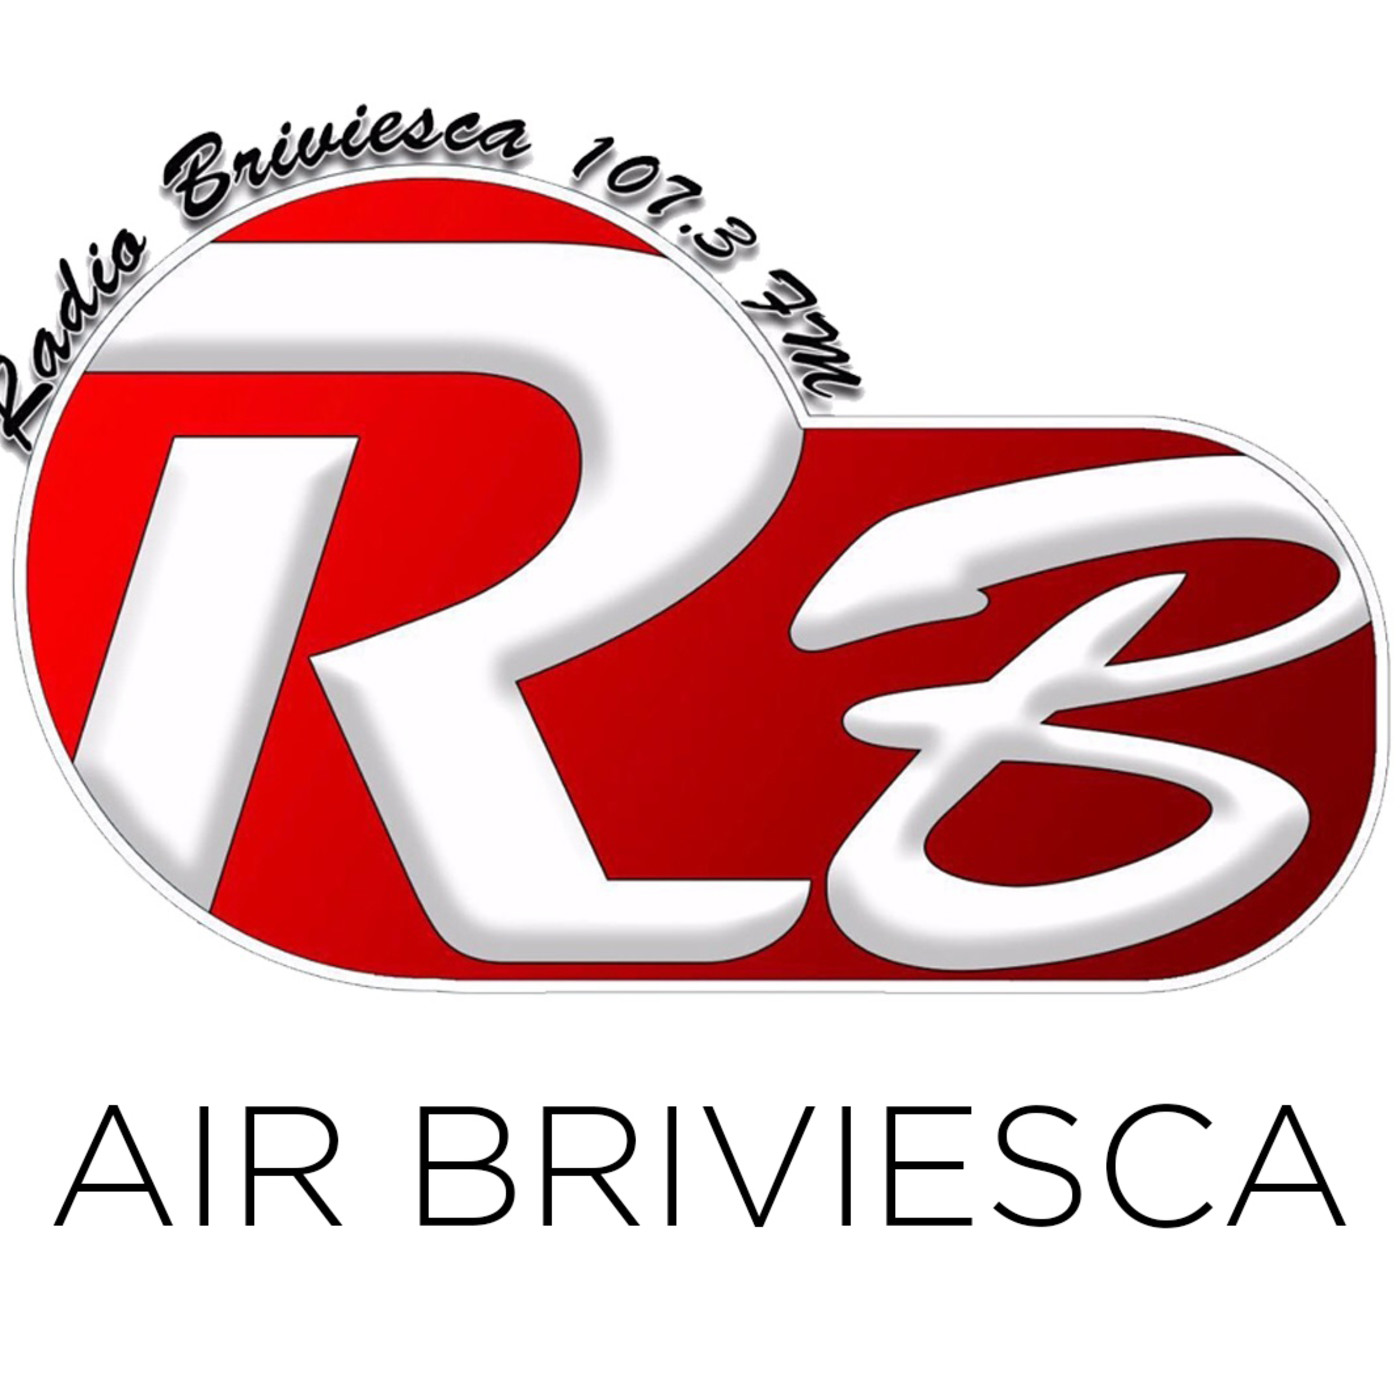 Air Briviesca 24/06/2018